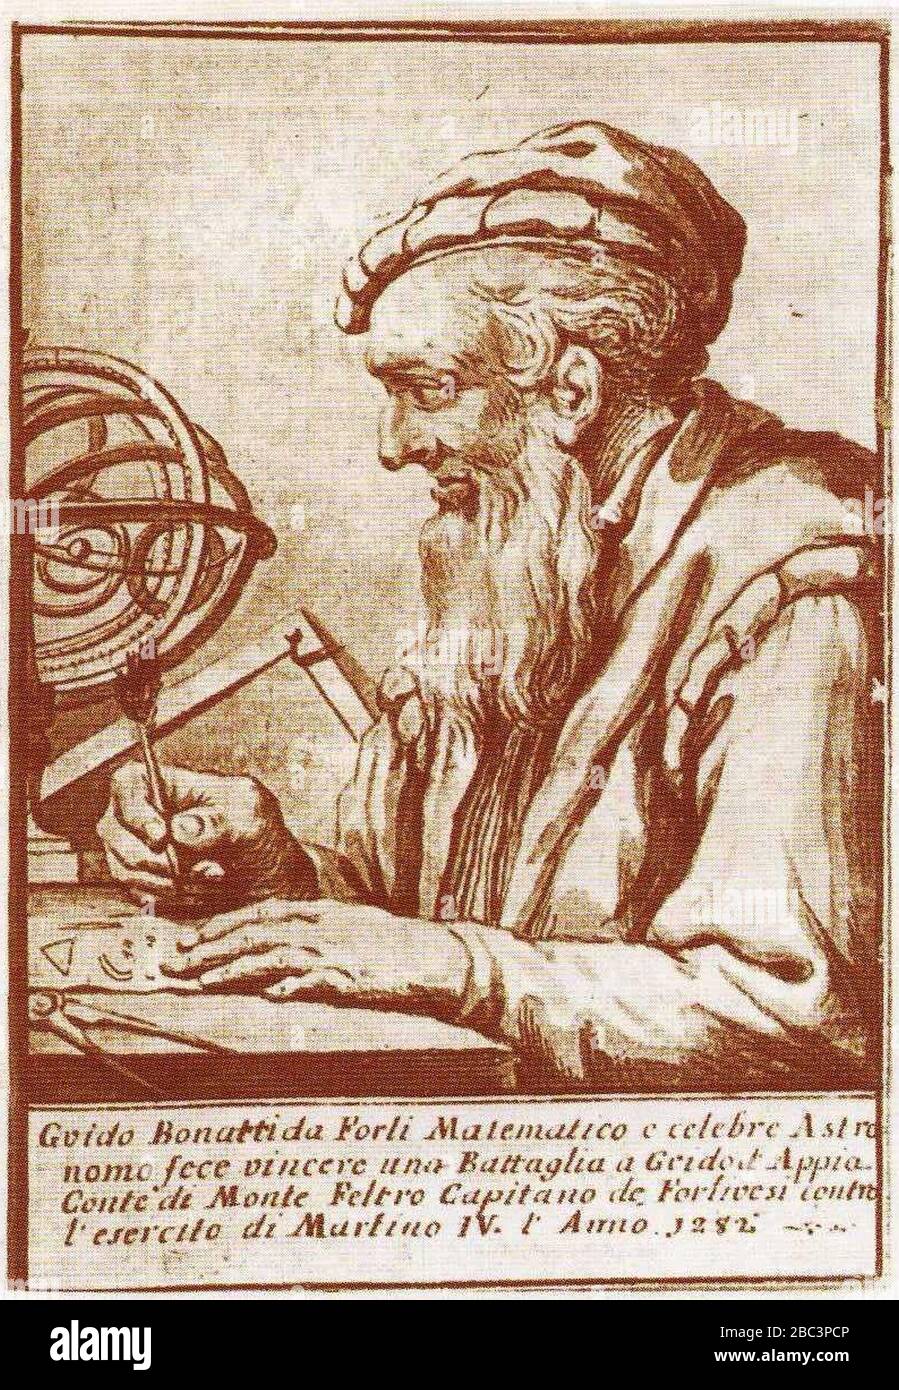 Guido bonatti, Anonimo del XVIII secolo. Stockfoto